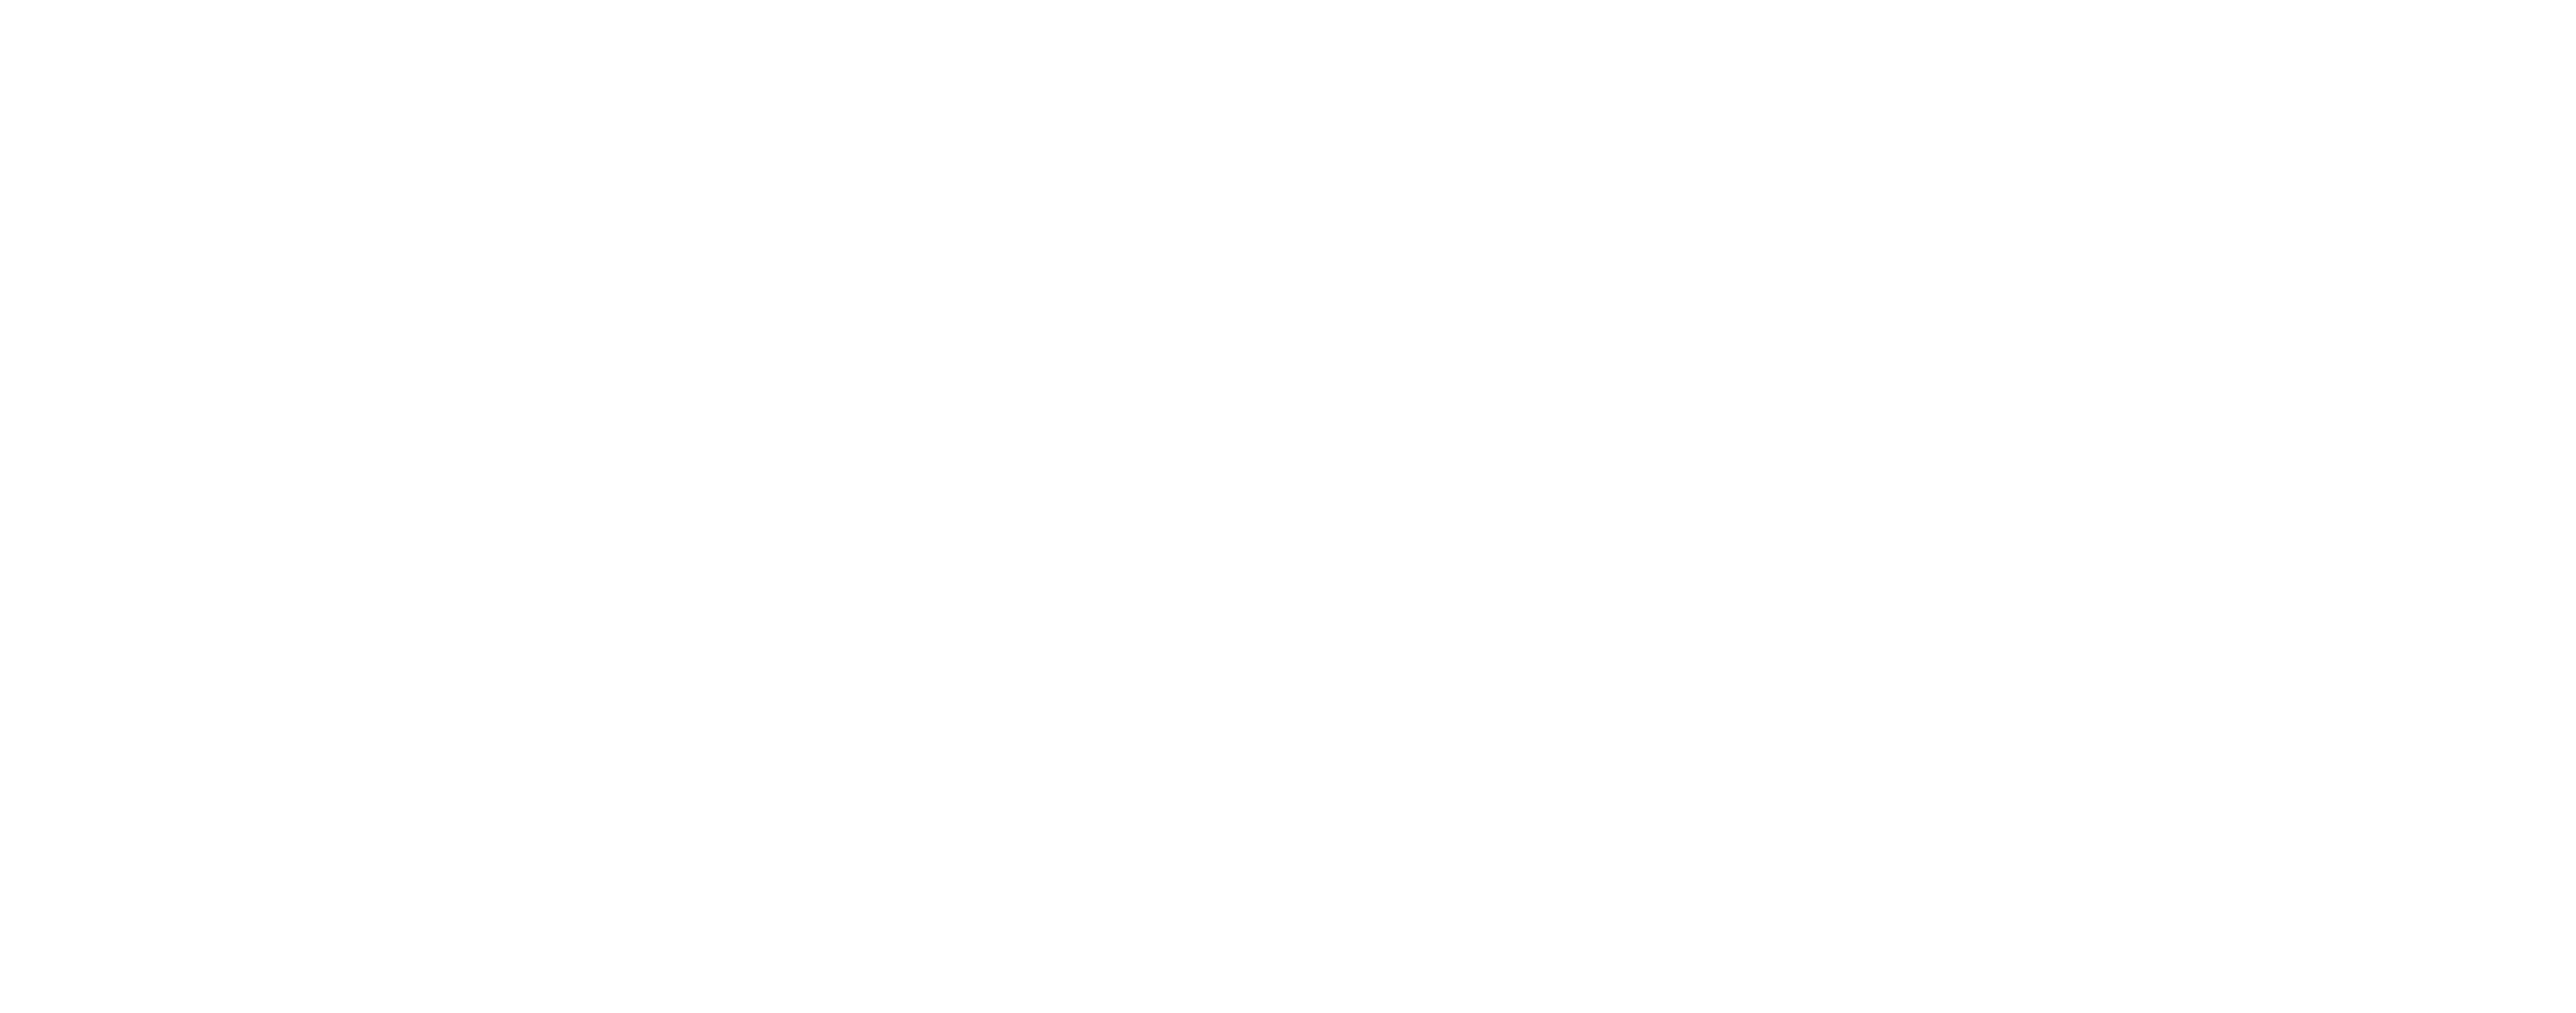 4Box4 Costa Rica